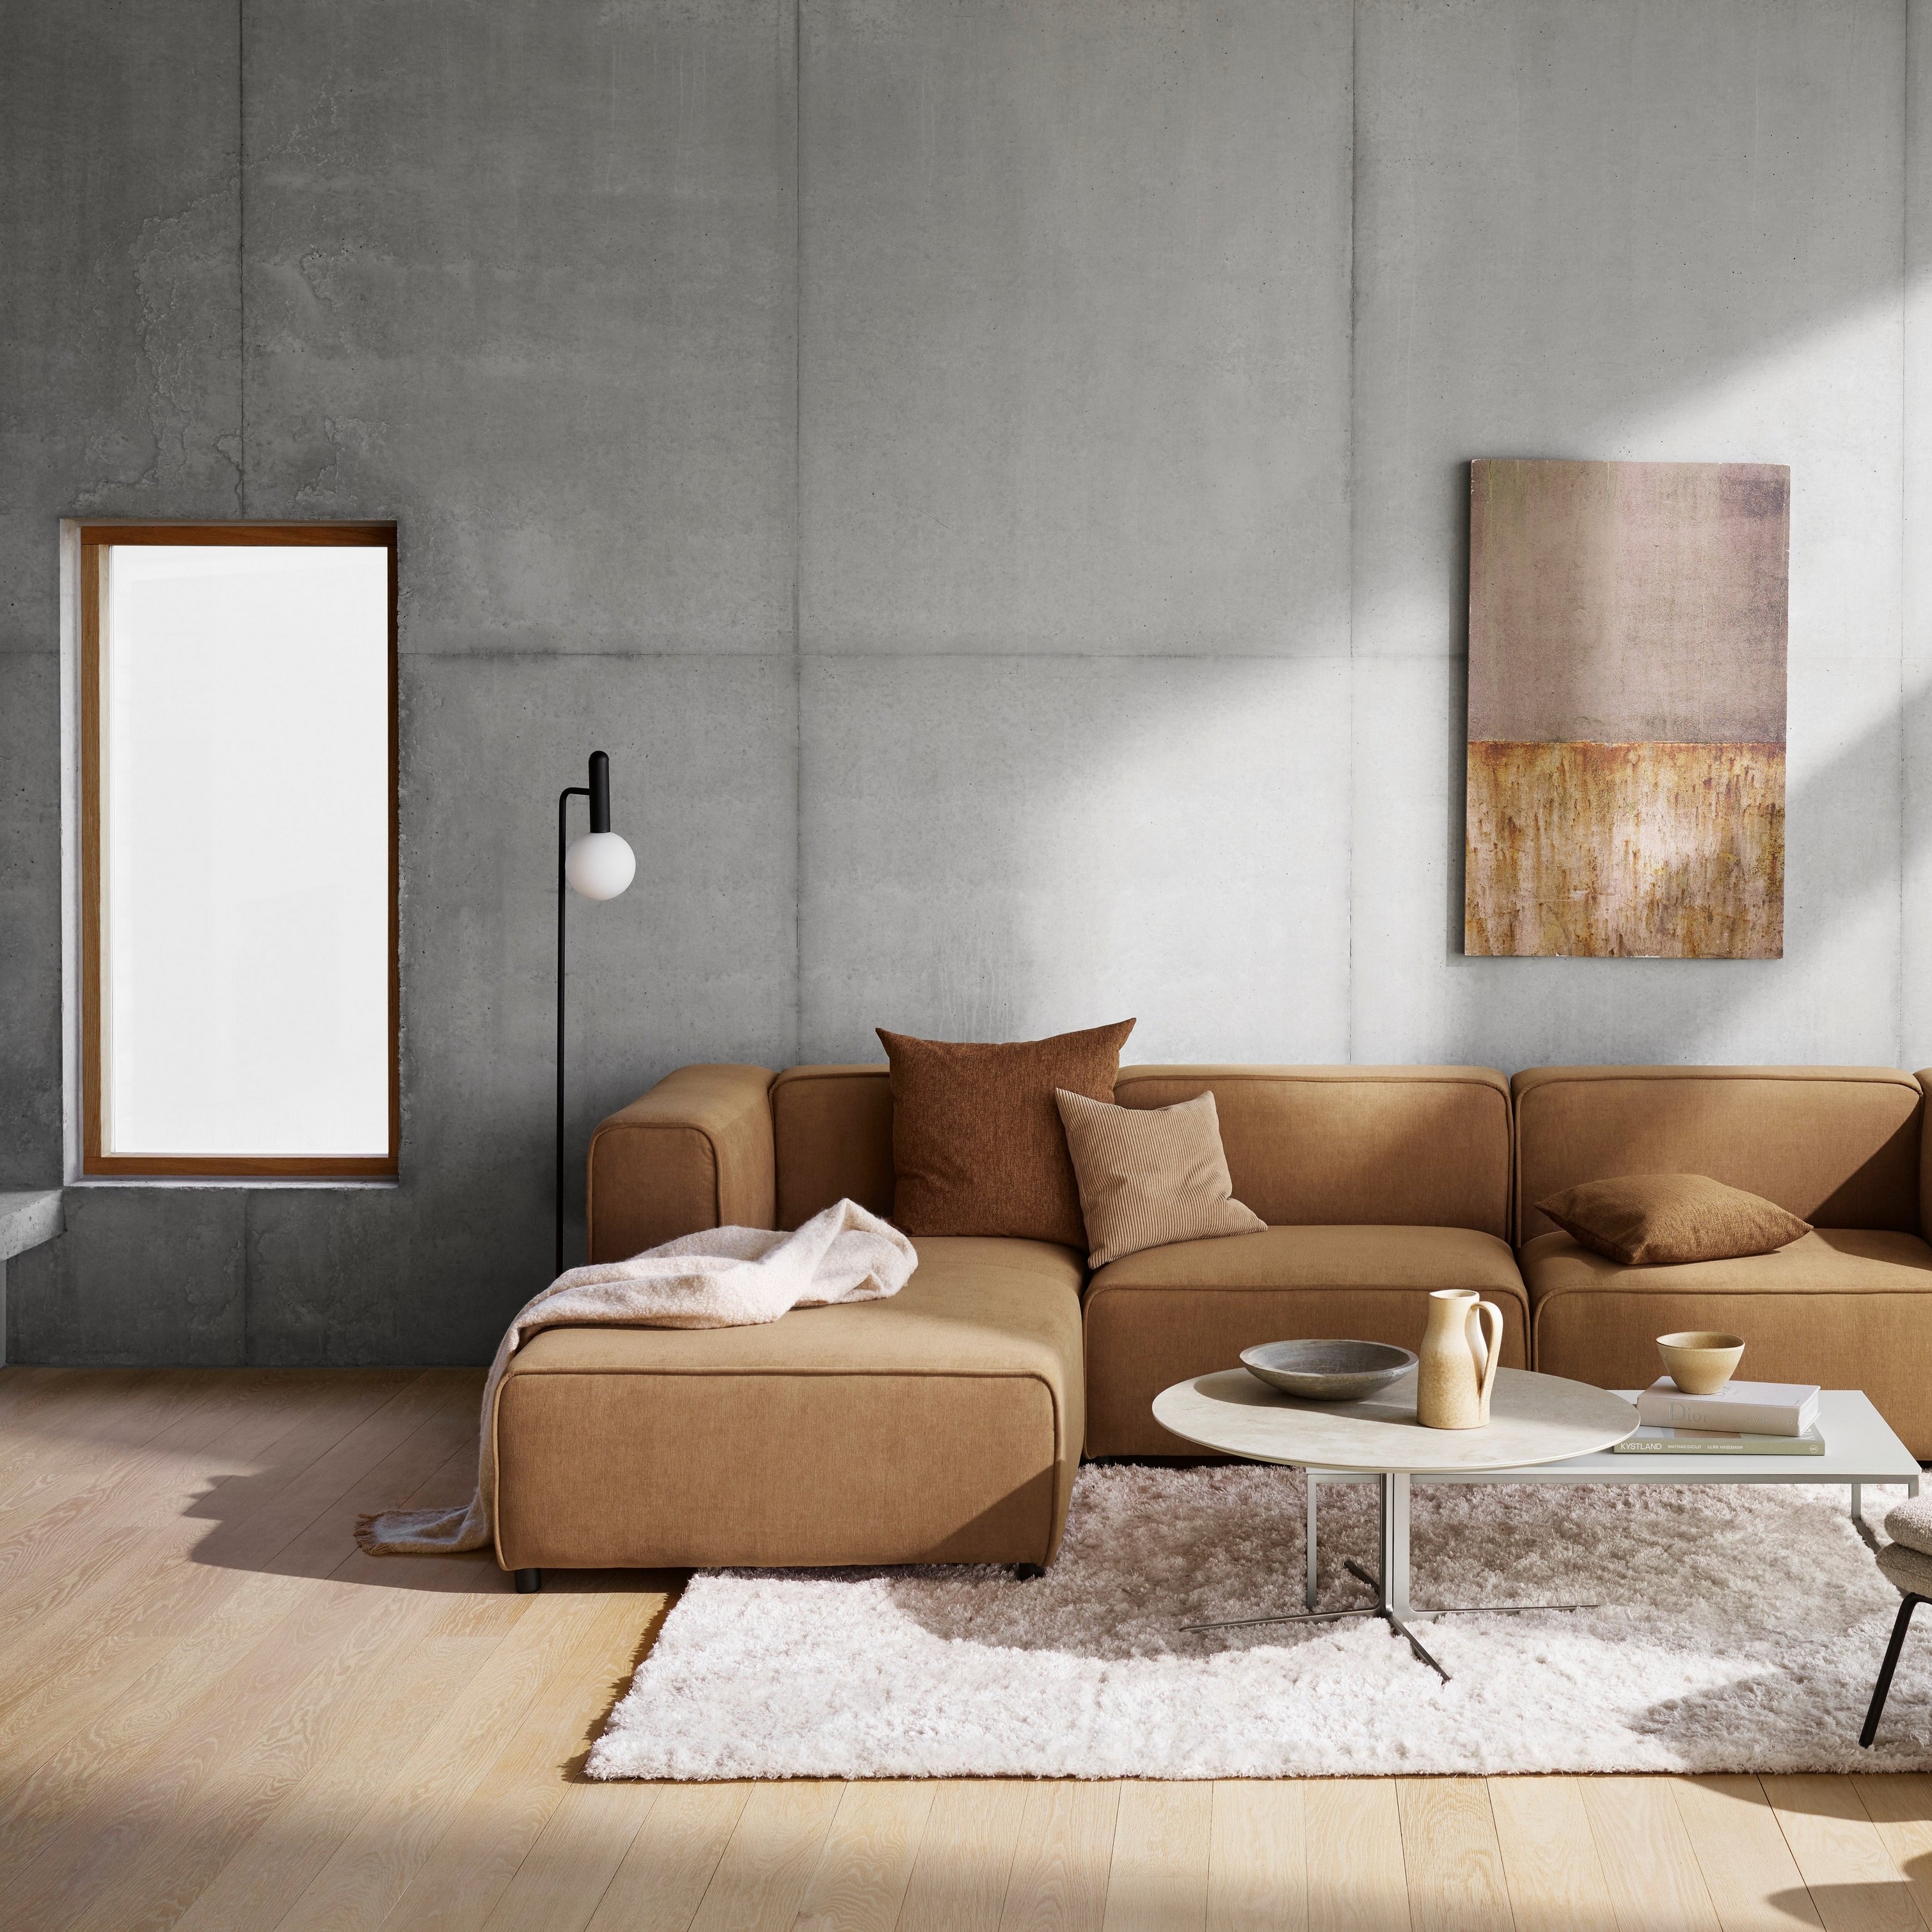 Современная гостиная с бежевым секционным диваном, абстрактным настенным искусством и плюшевым ковром на деревянном полу.